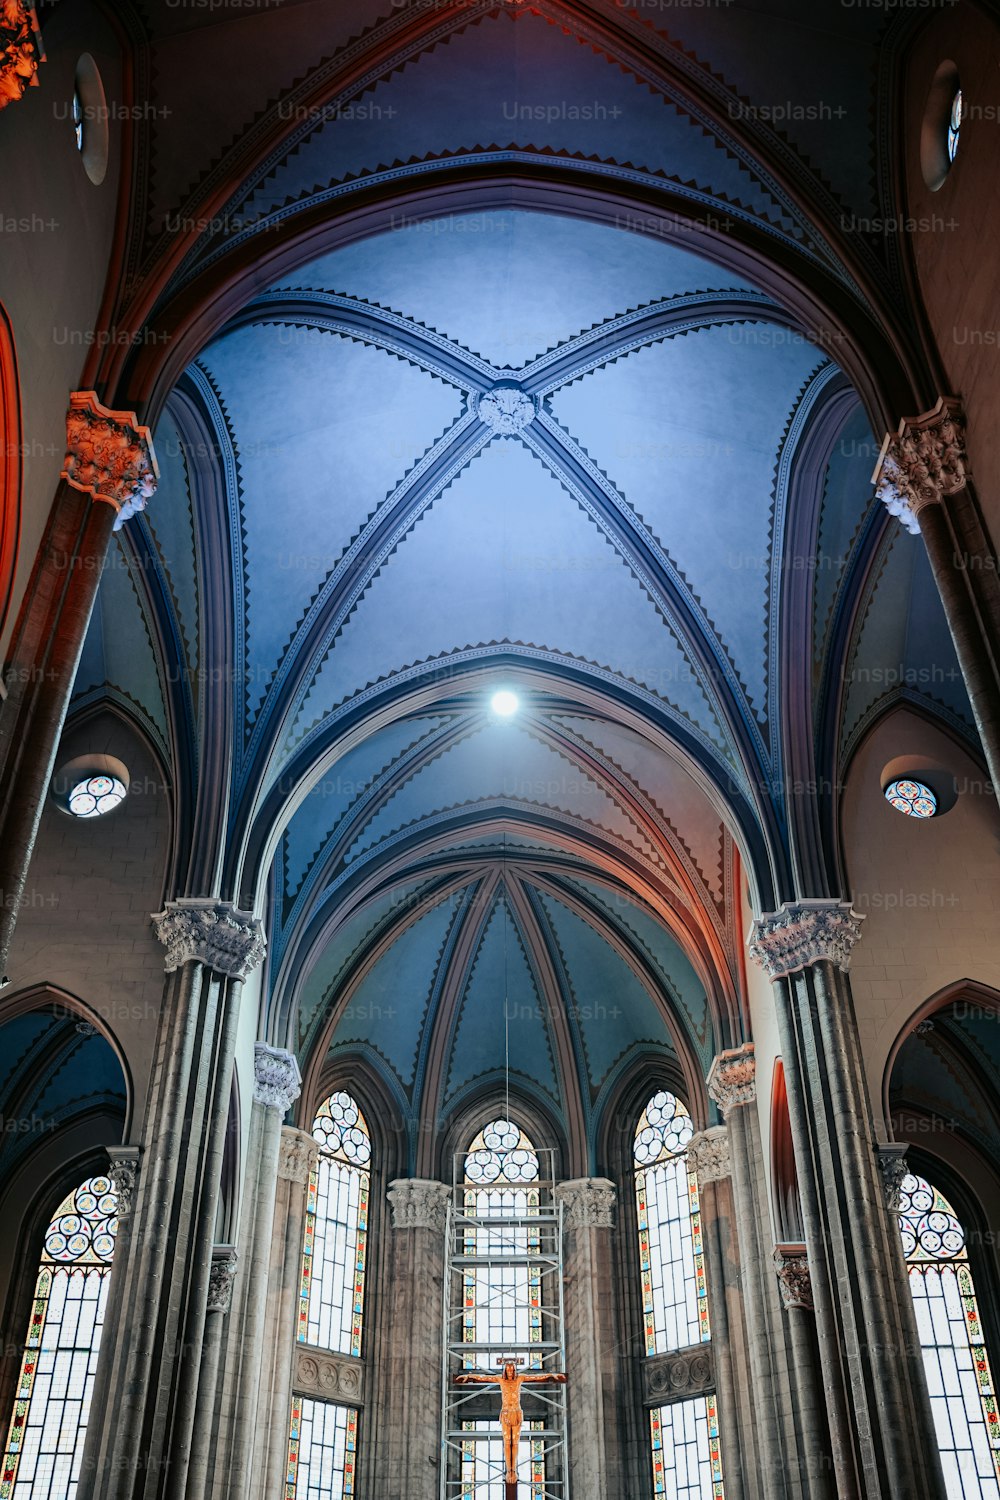 高いアーチ型の天井とステンドグラスの窓がある大きな大聖堂